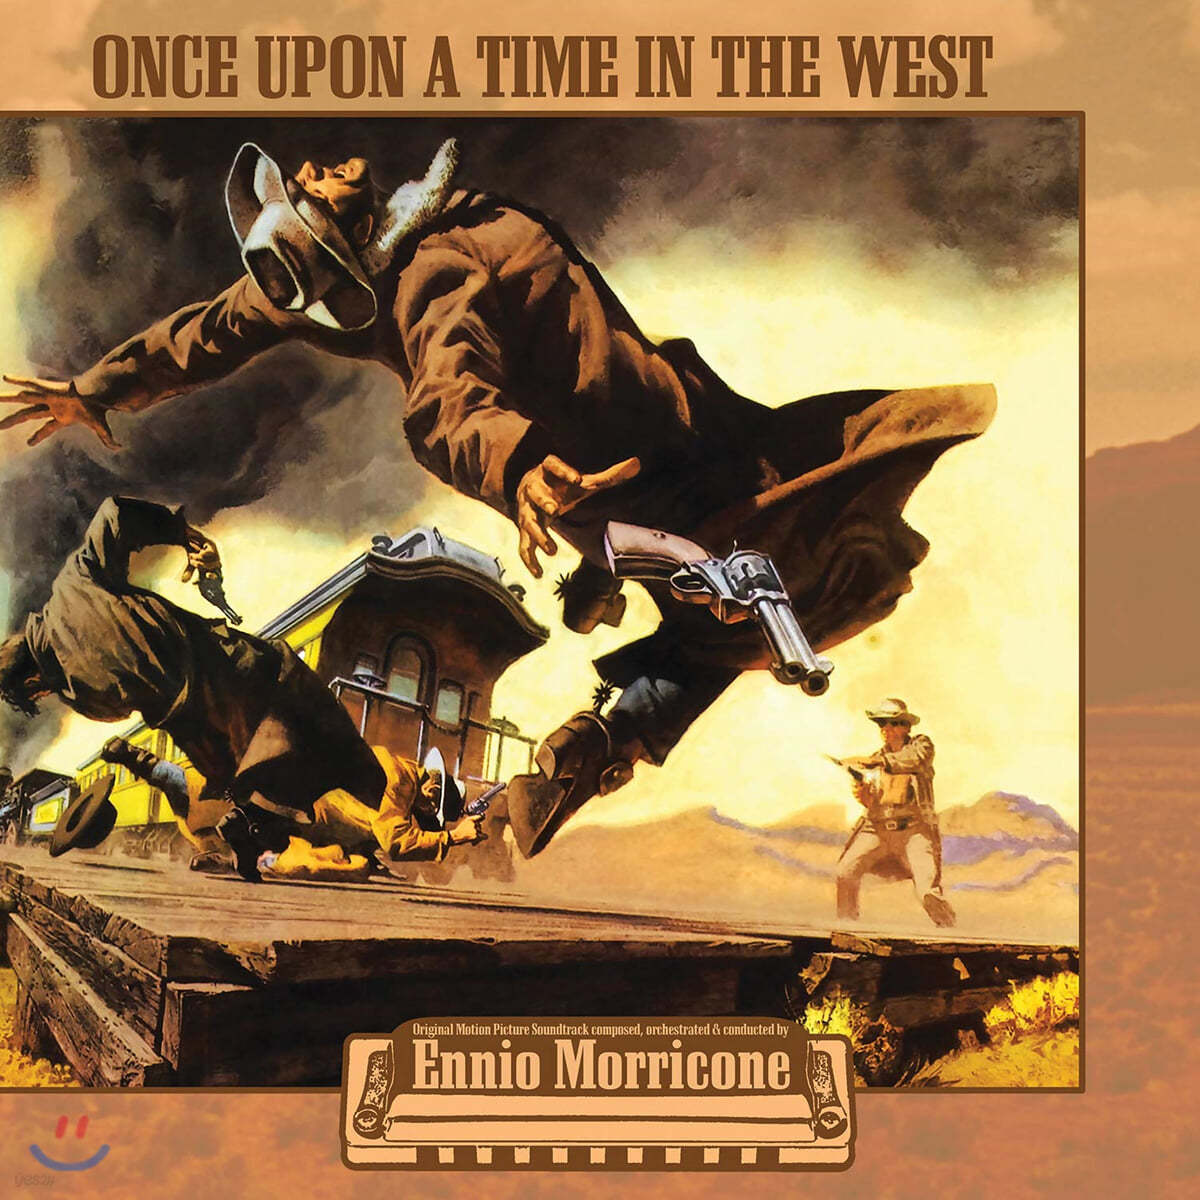 원스 어폰 어 타임 인 더 웨스트 영화음악 (Once Upon a Time in the West OST by Ennio Morricone) [투명 컬러 LP] 